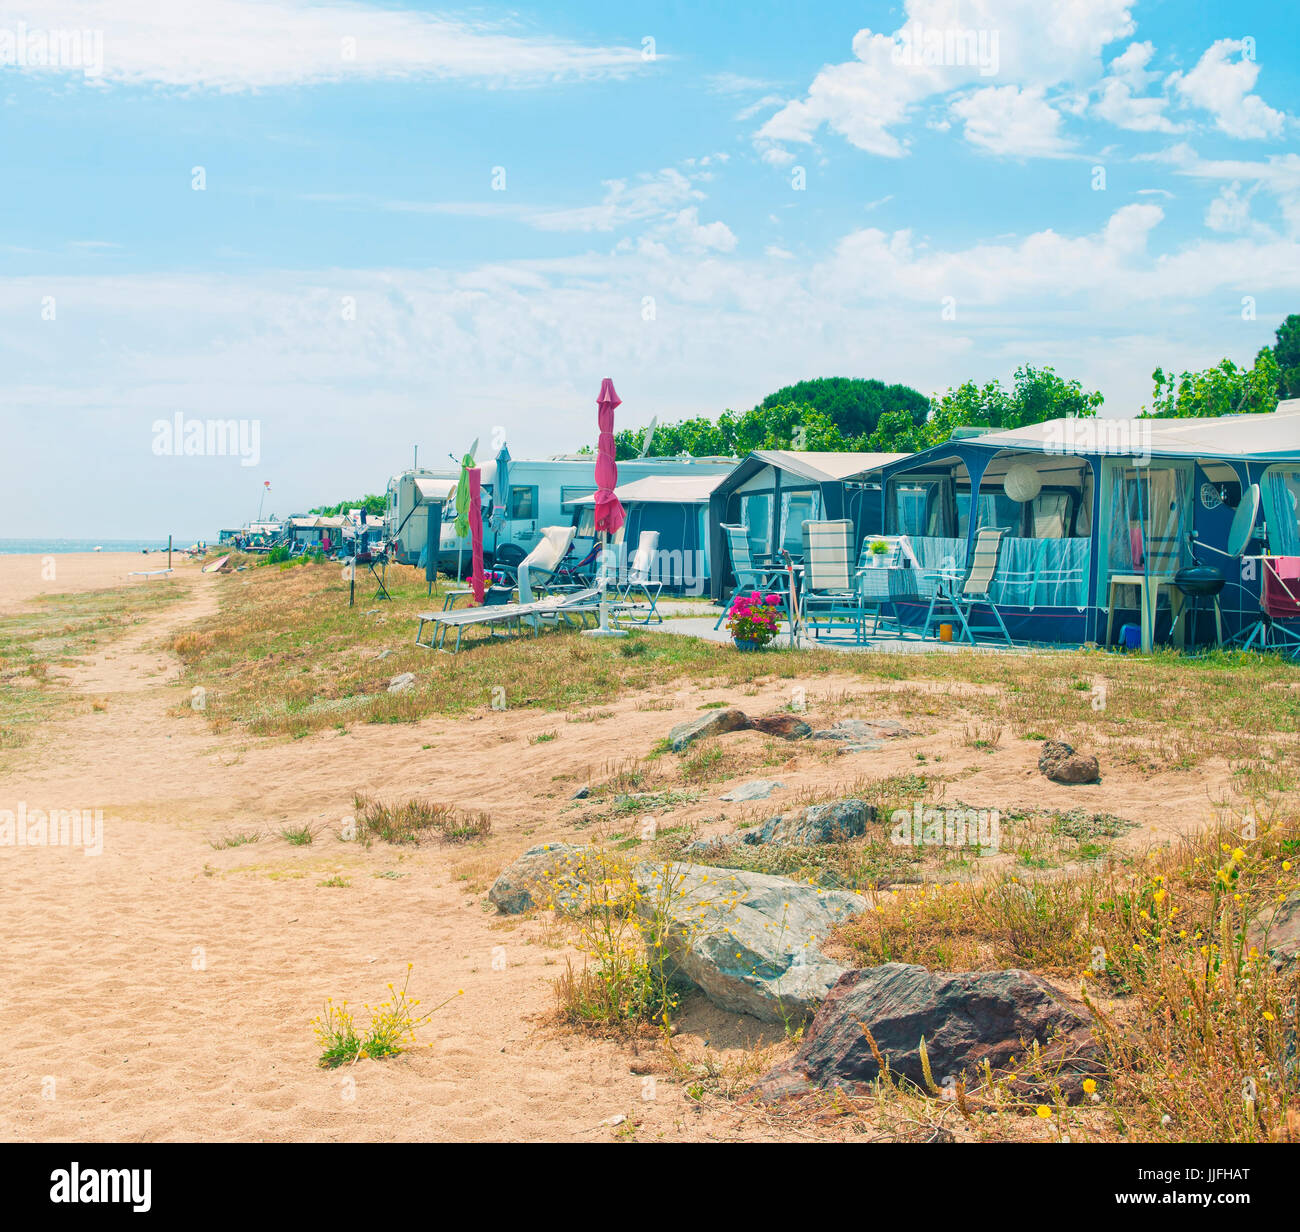 Crossen Bild der Campingplatz am Strand mit Zelten und Wohnwagen Mittelmeer  an sonnigen Tag in Santa Susanna, Katalonien, Spanien Stockfotografie -  Alamy